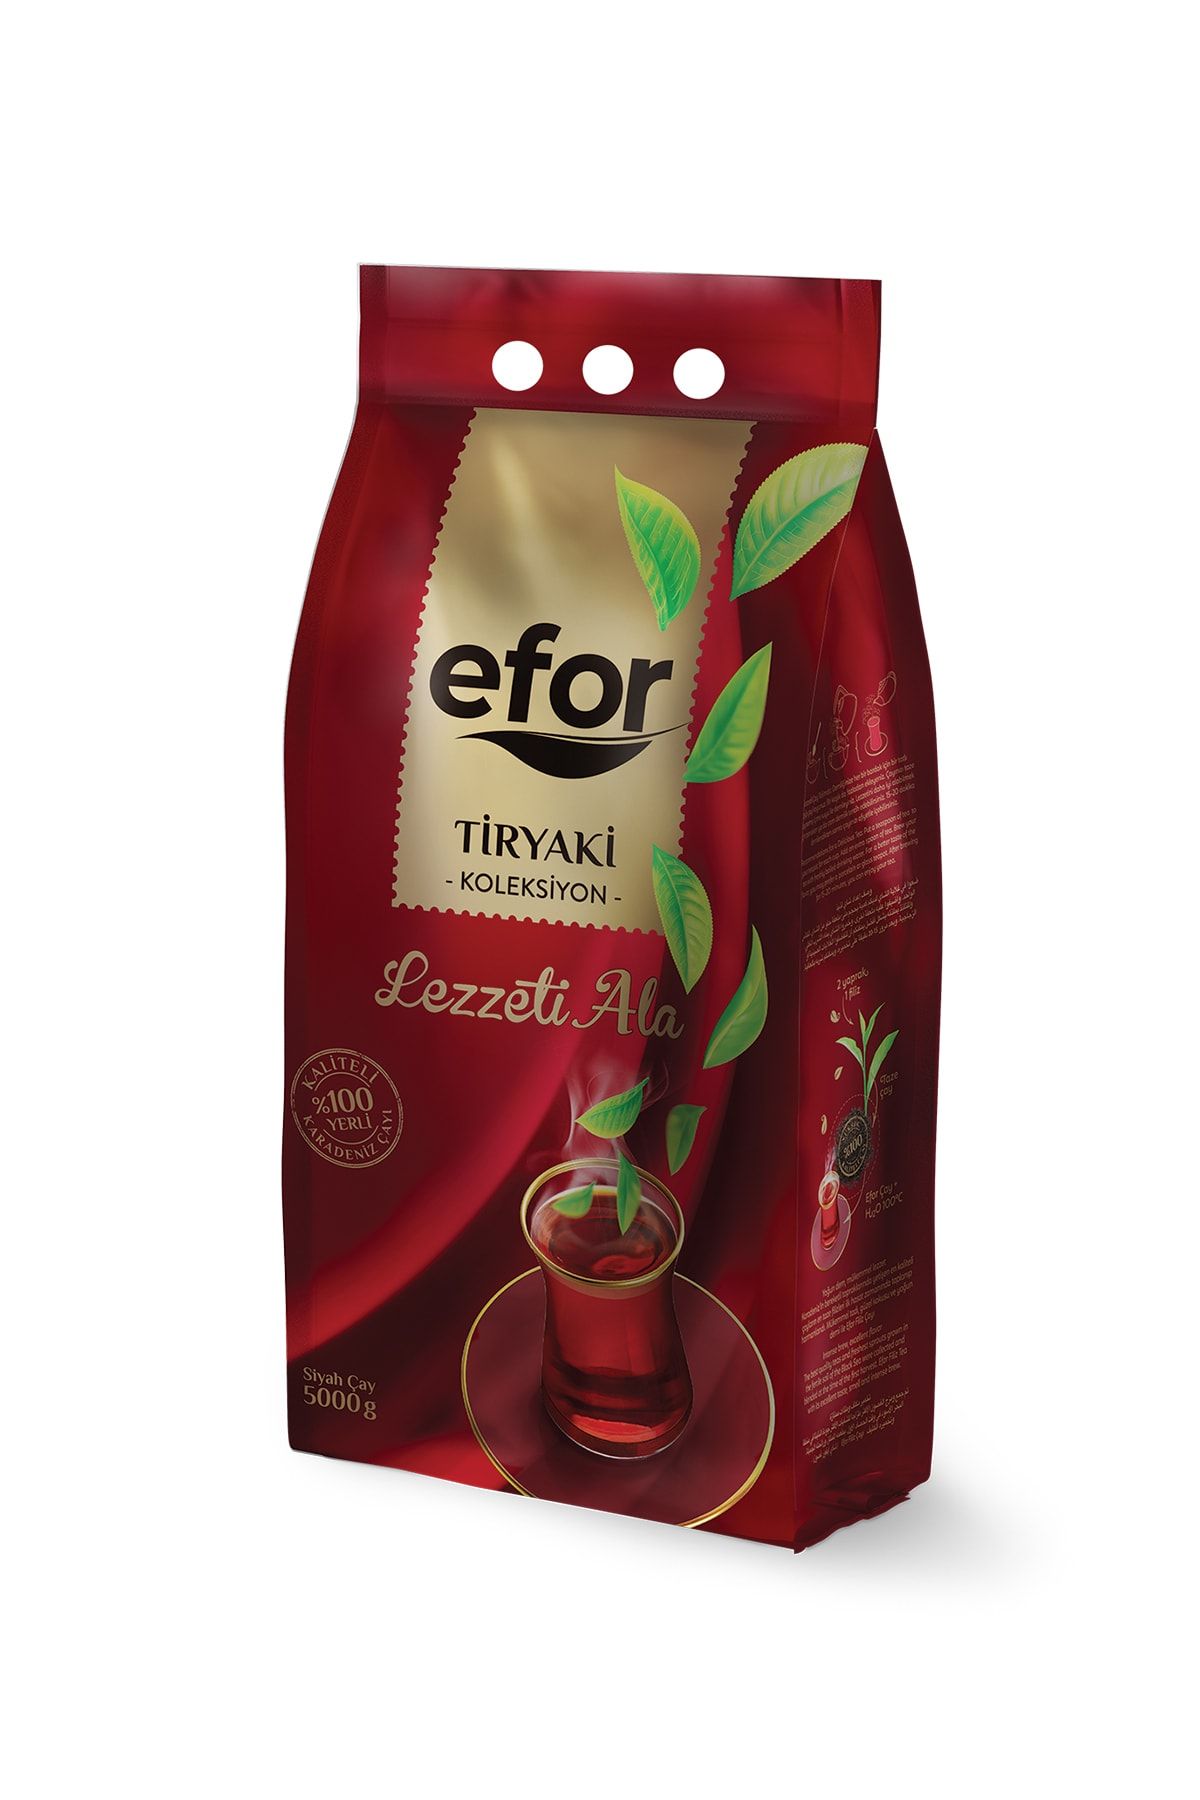 Efor Tiryaki Siyah Çay Lezzeti Ala 5000 gr (5 KG)